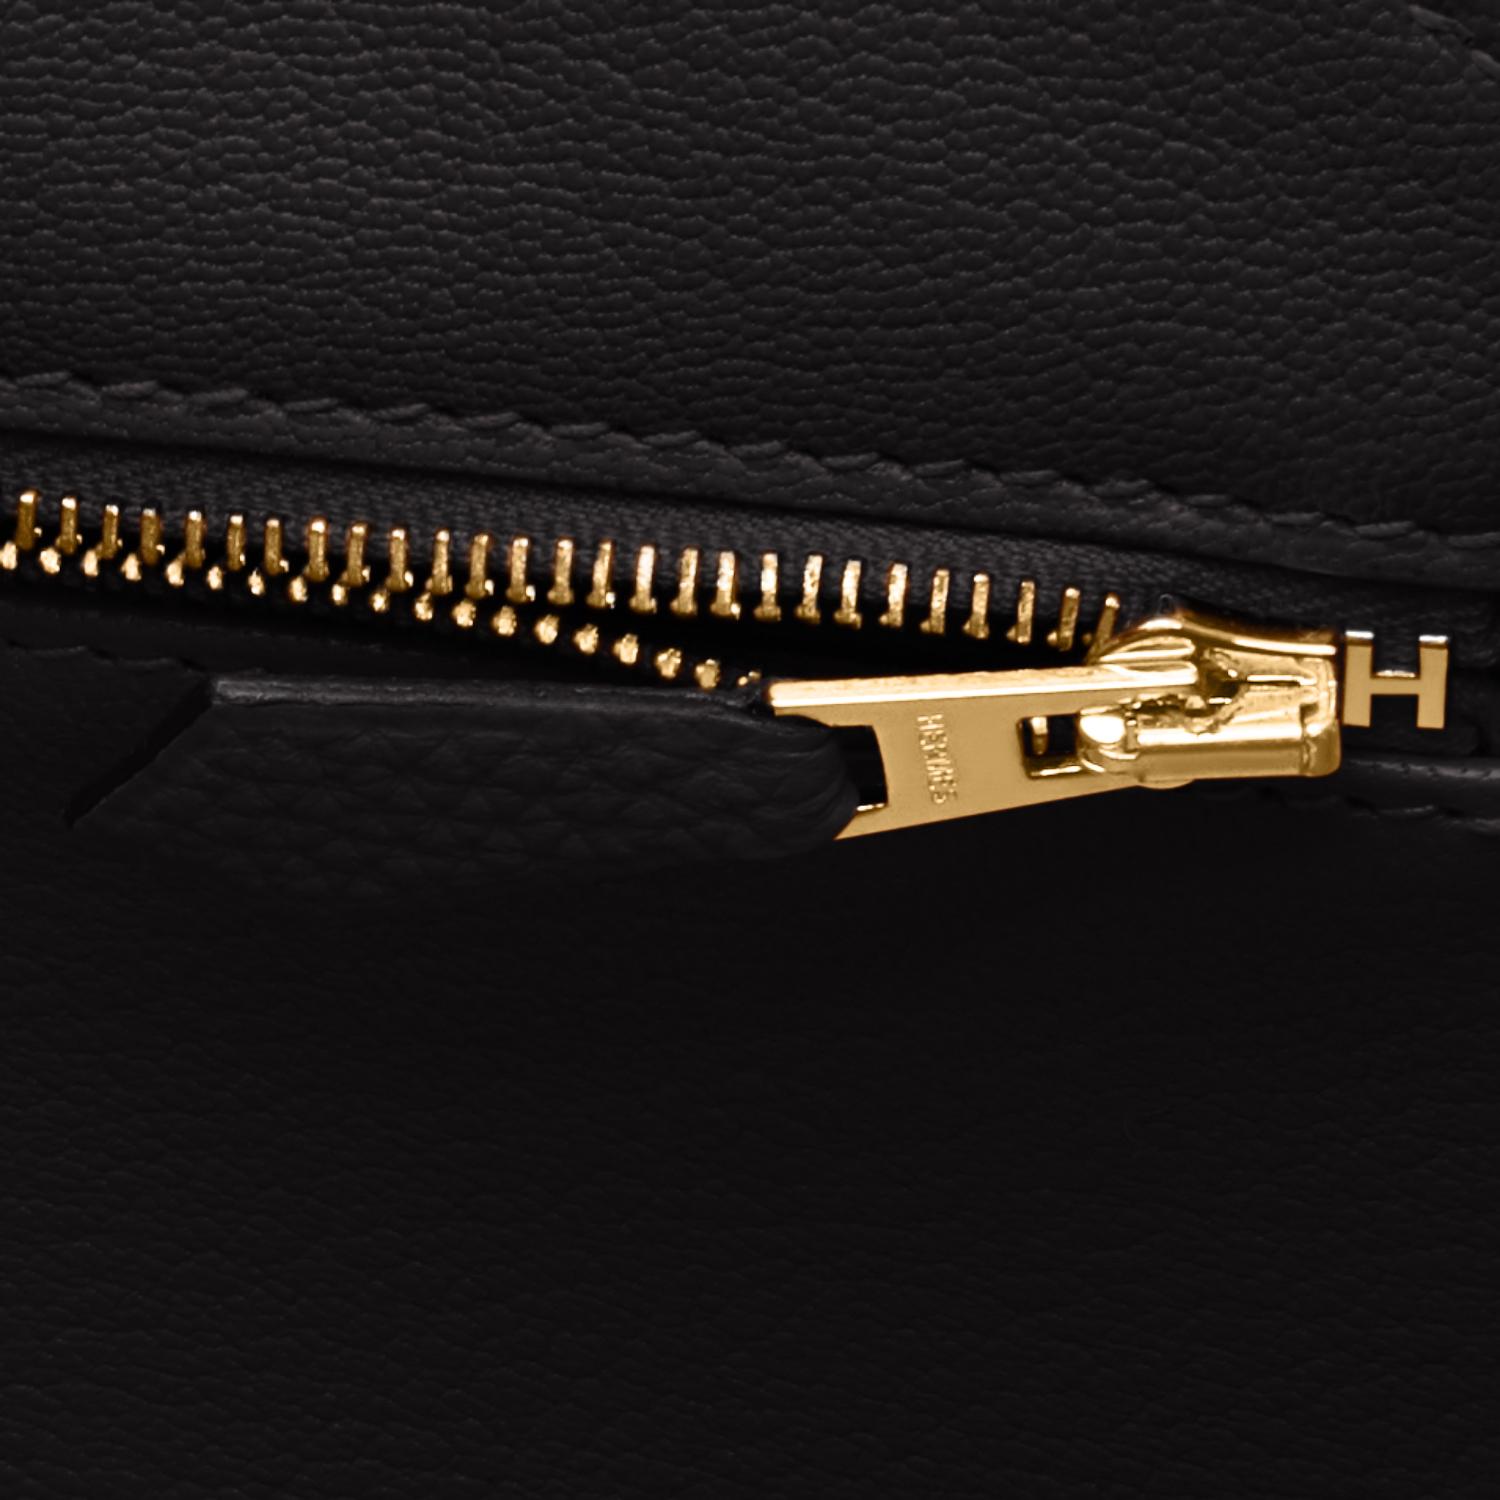 Sac Hermès Birkin 35 cm en cuir Togo noir avec détails dorés et imprimé Z, 2021 2